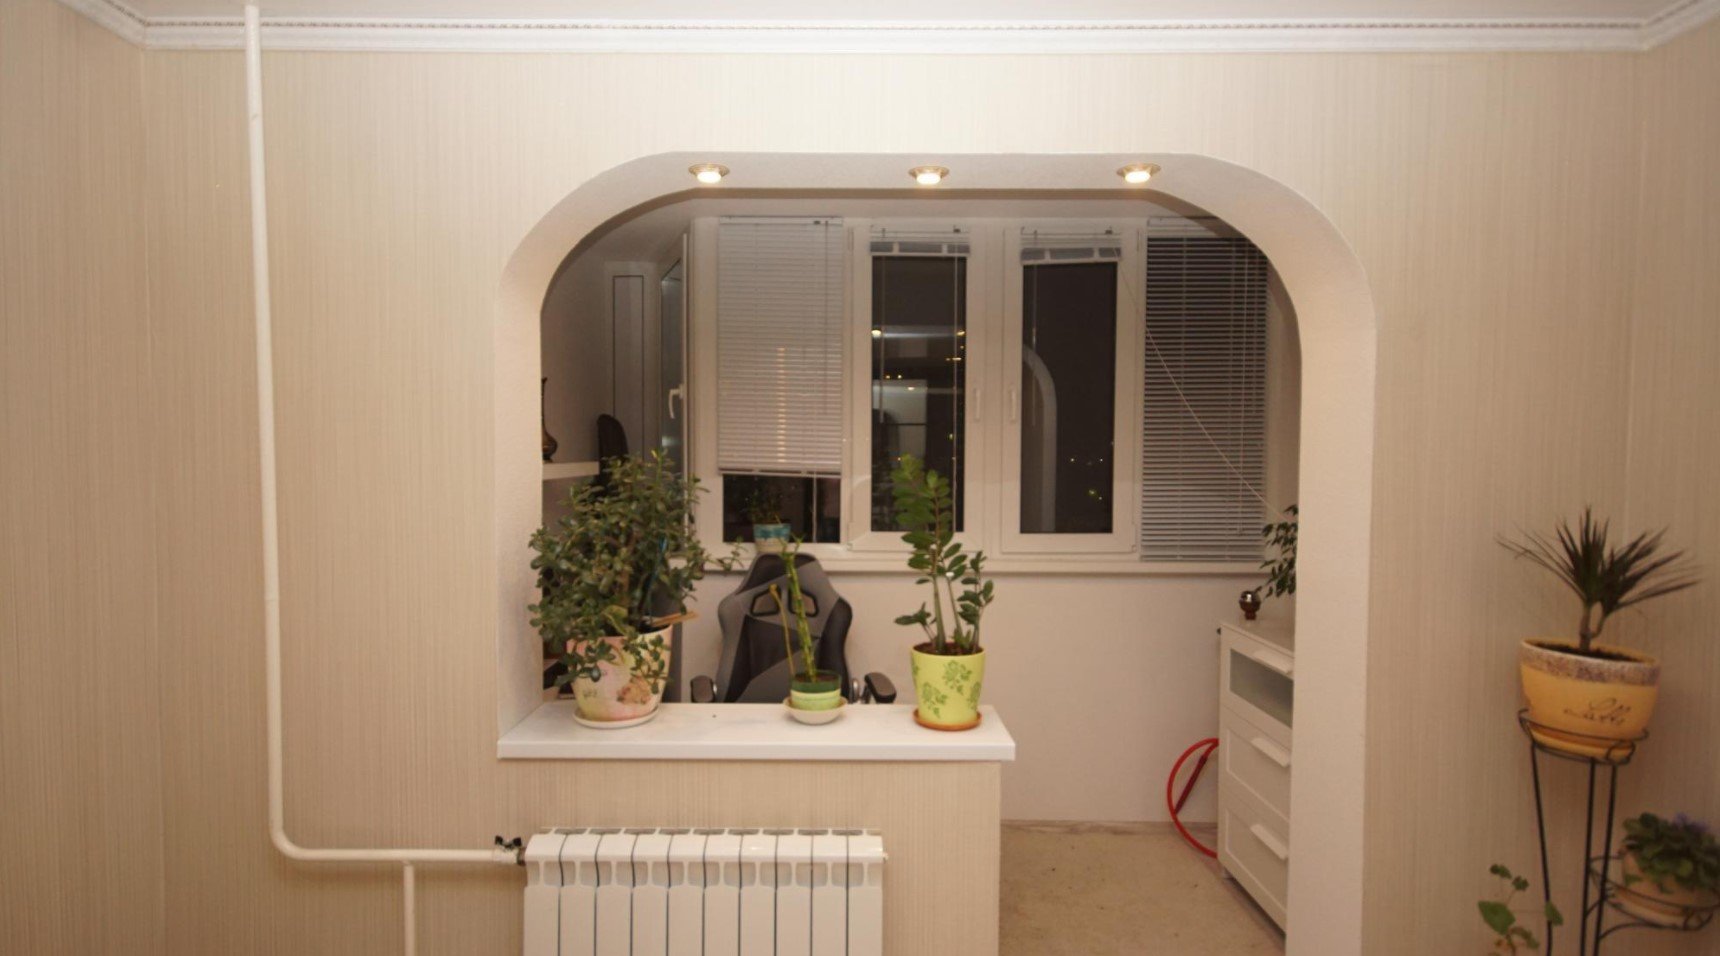 Кухня, совмещенная с балконом или лоджией: фото удачного дизайна, советы по объединению